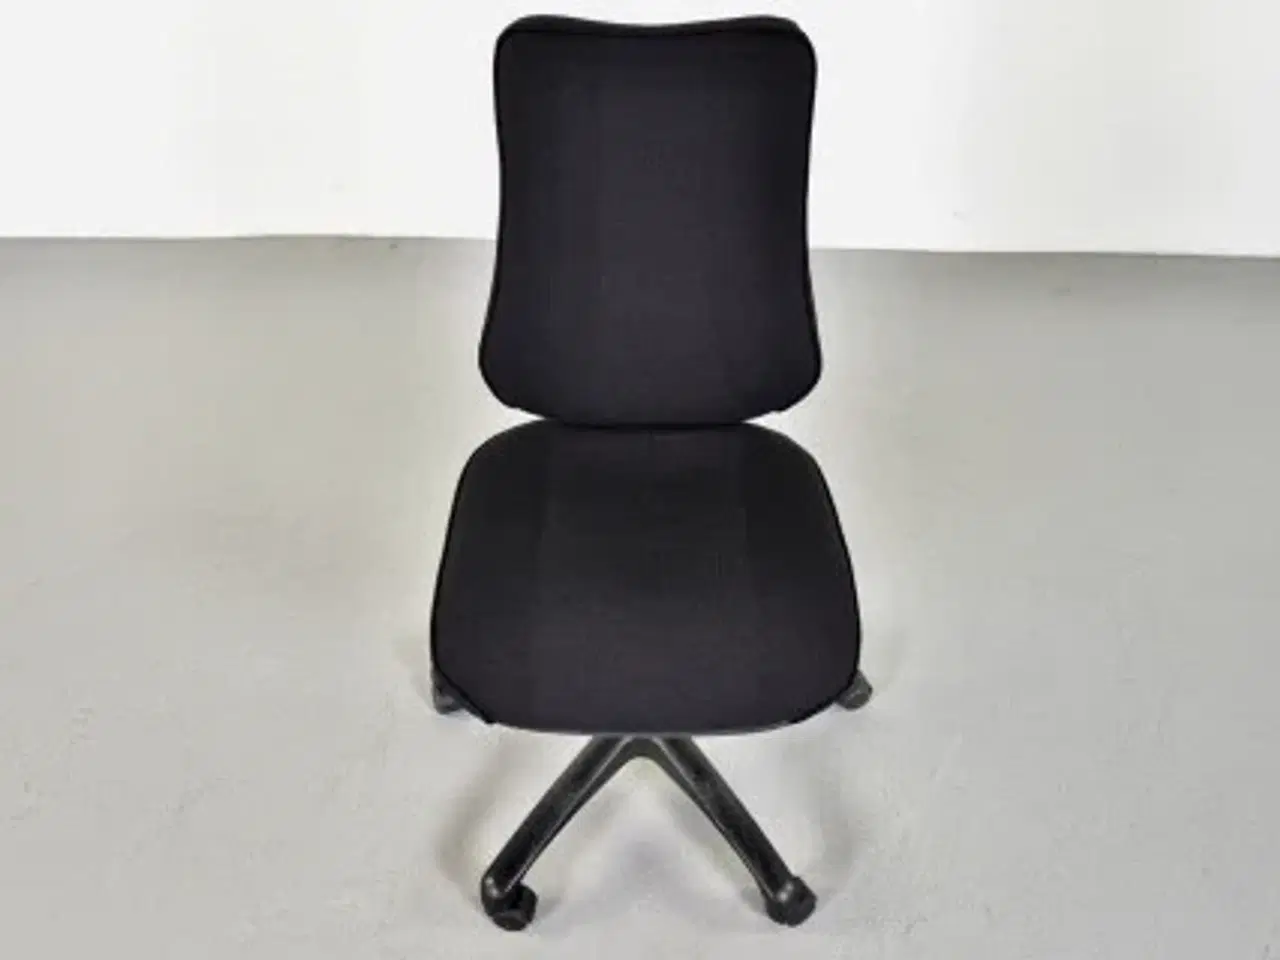 Billede 5 - Rbm model 800 kontorstol med høj ryg og nyt sort polster